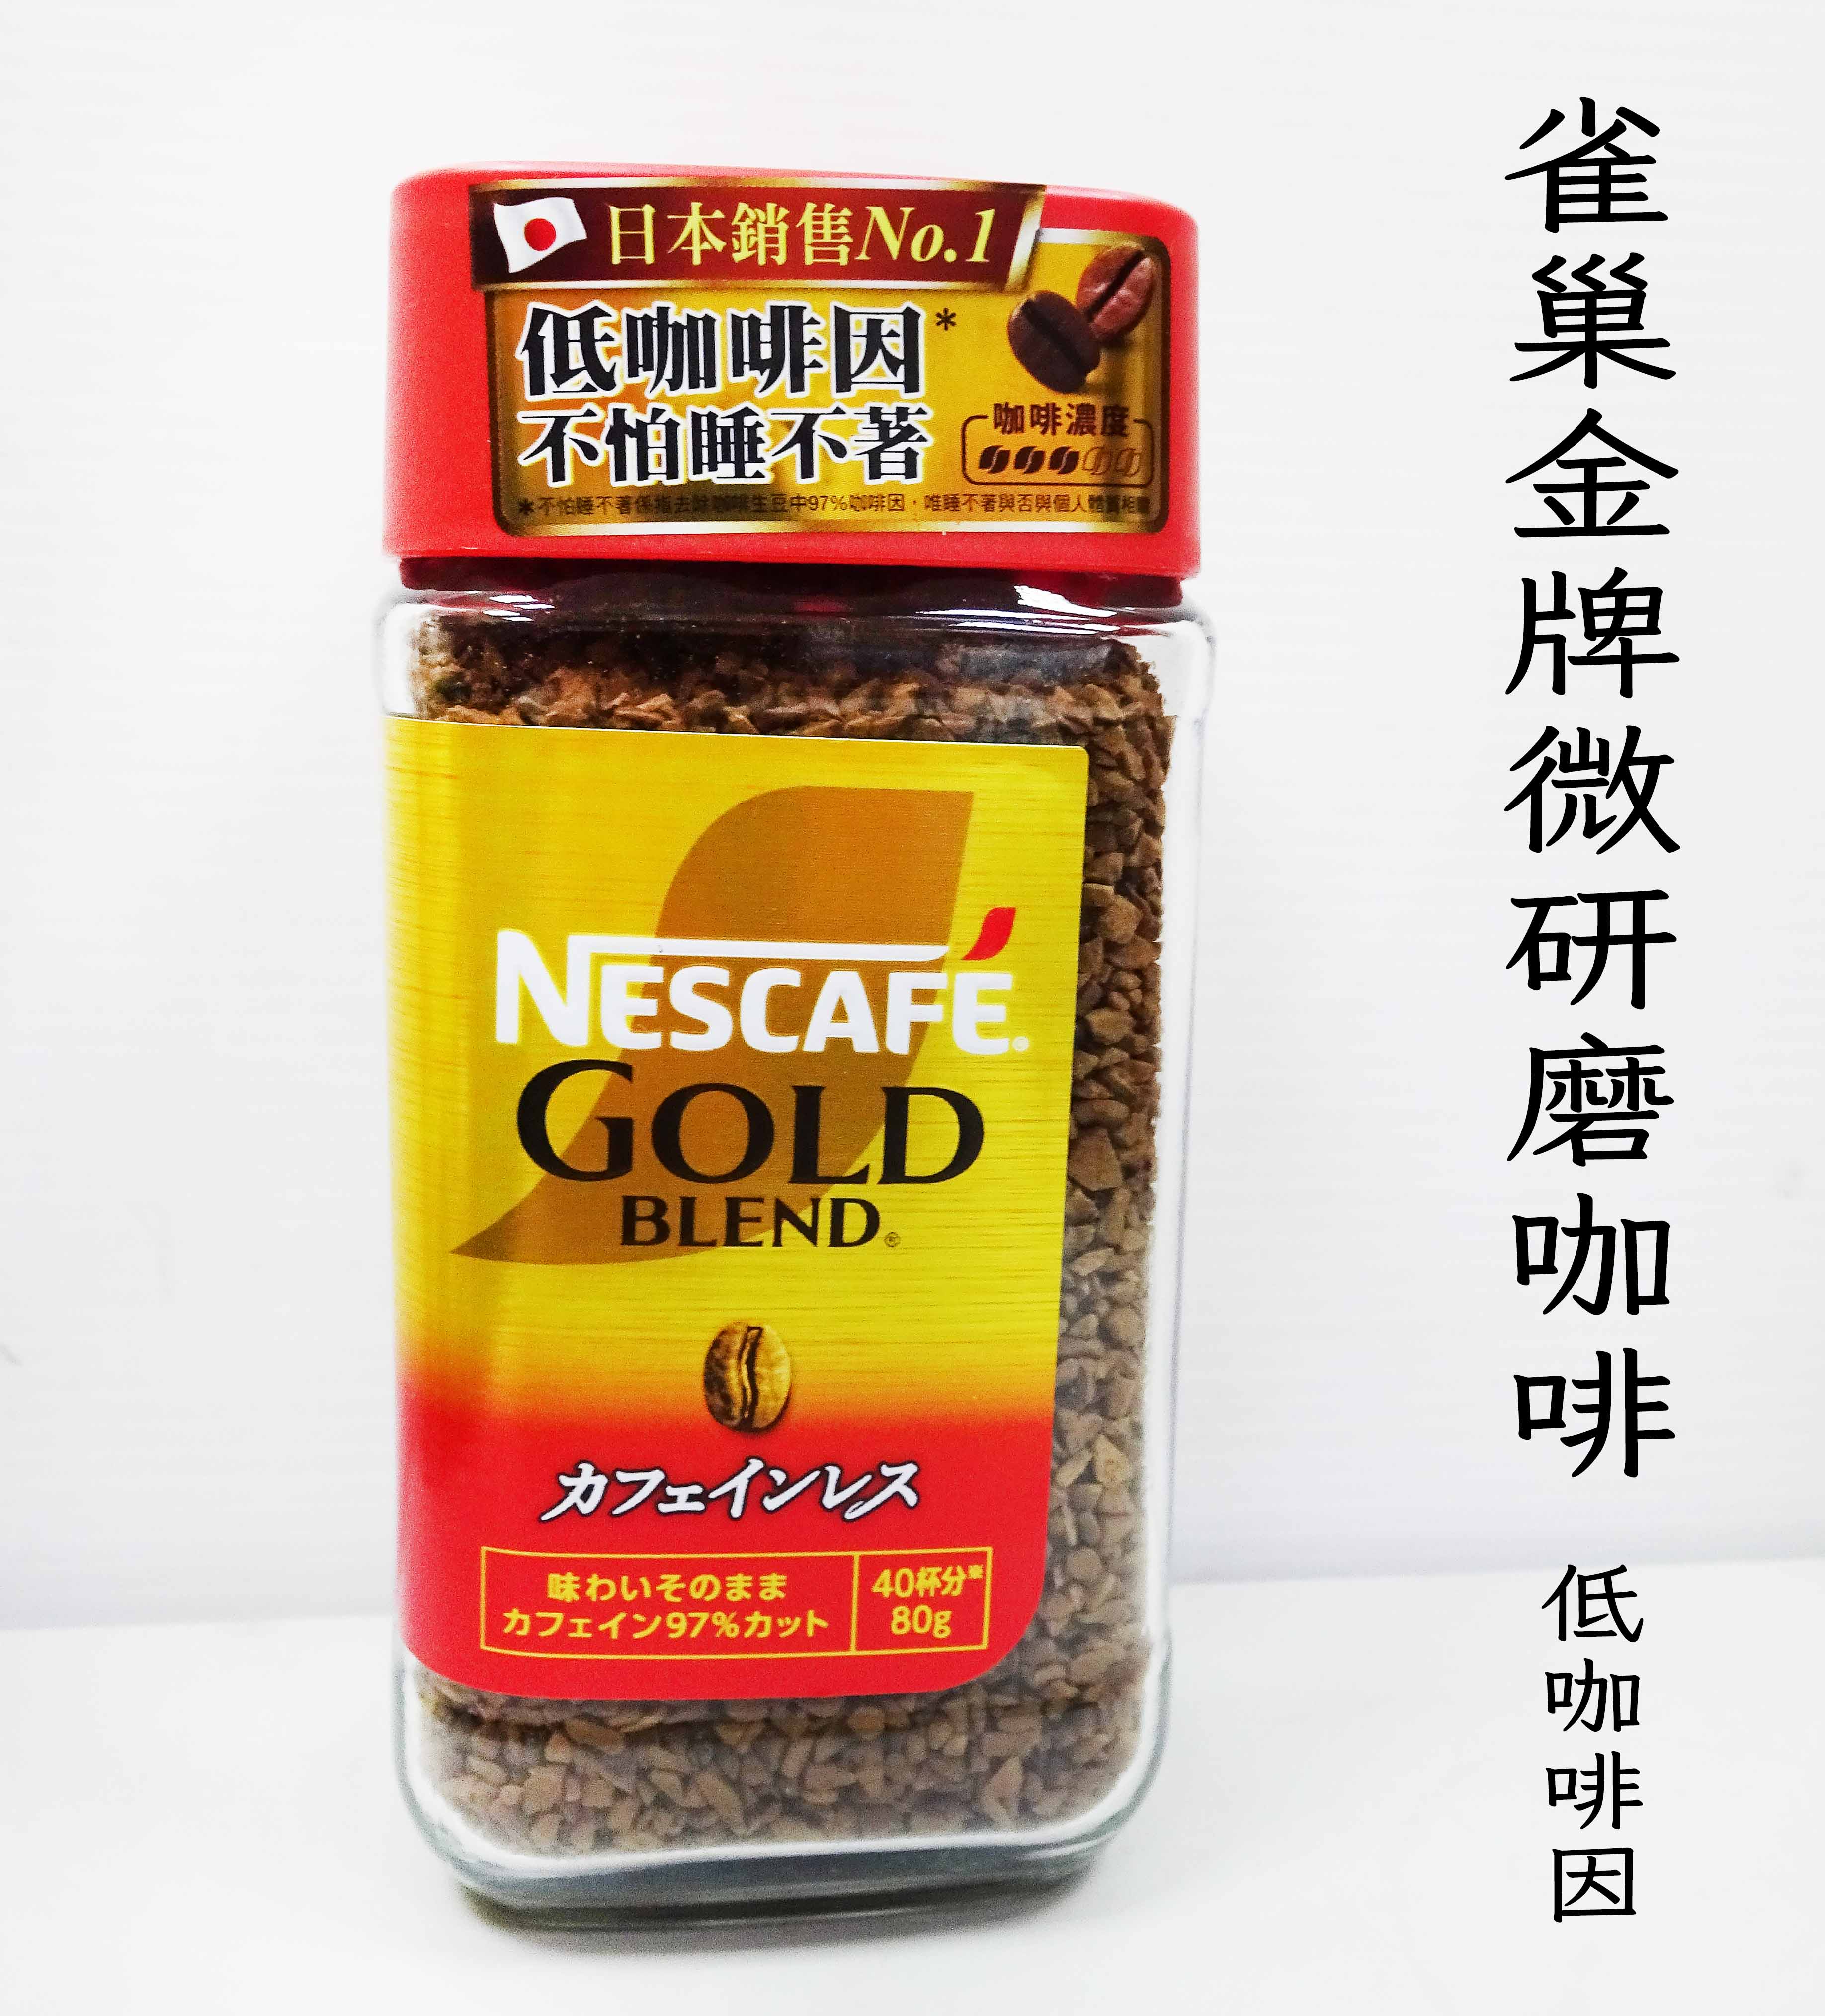 雀巢金牌微研磨咖啡-低咖啡因 80g**效期2025.12月